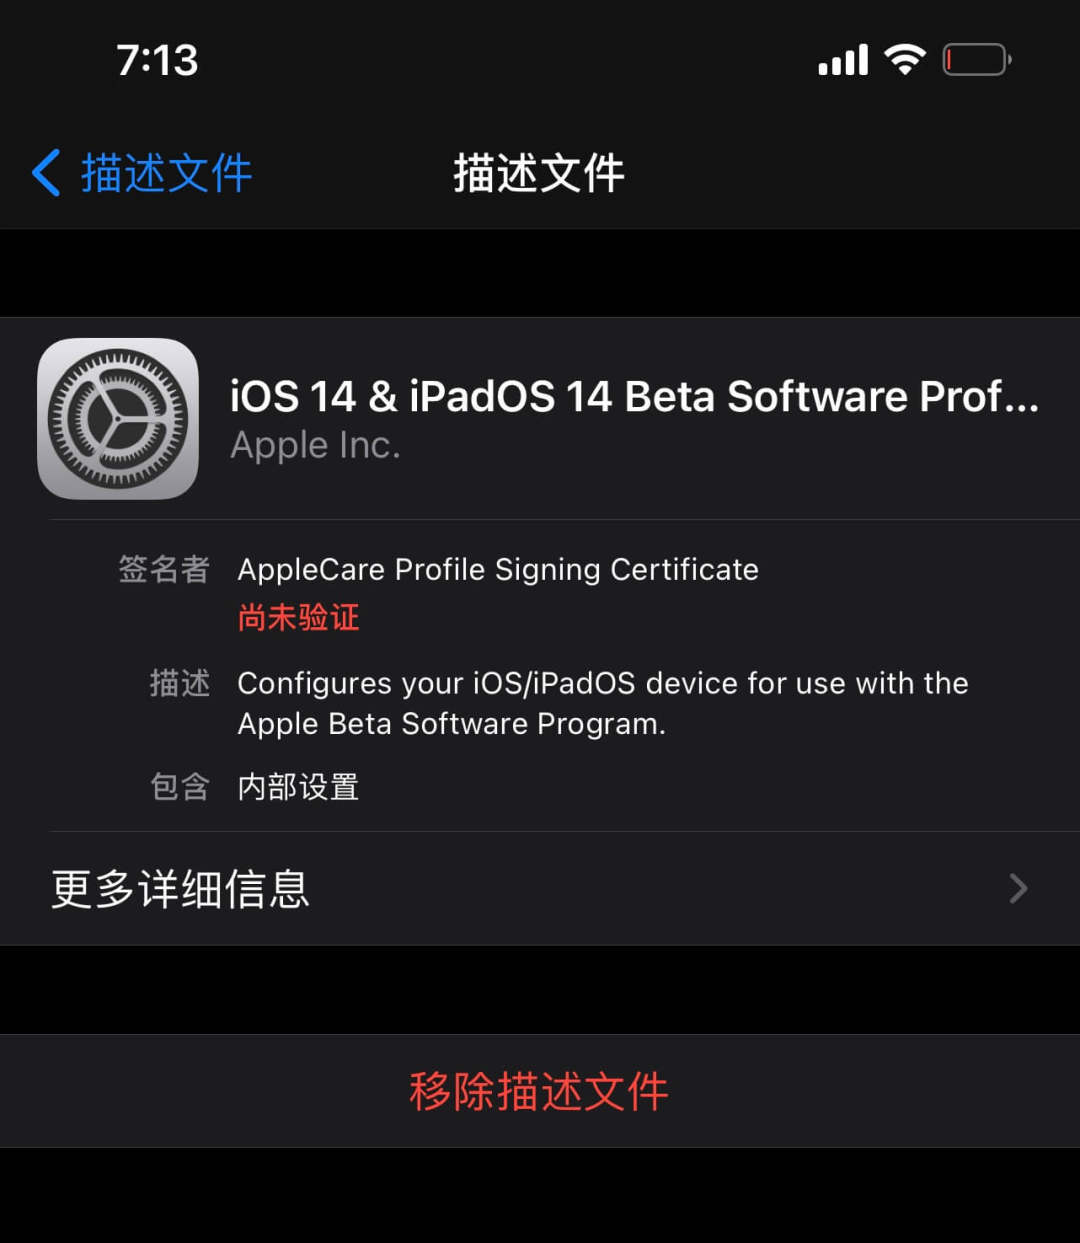 苹果推送 iOS 14.5 Beta 8，正式版最快下周到来